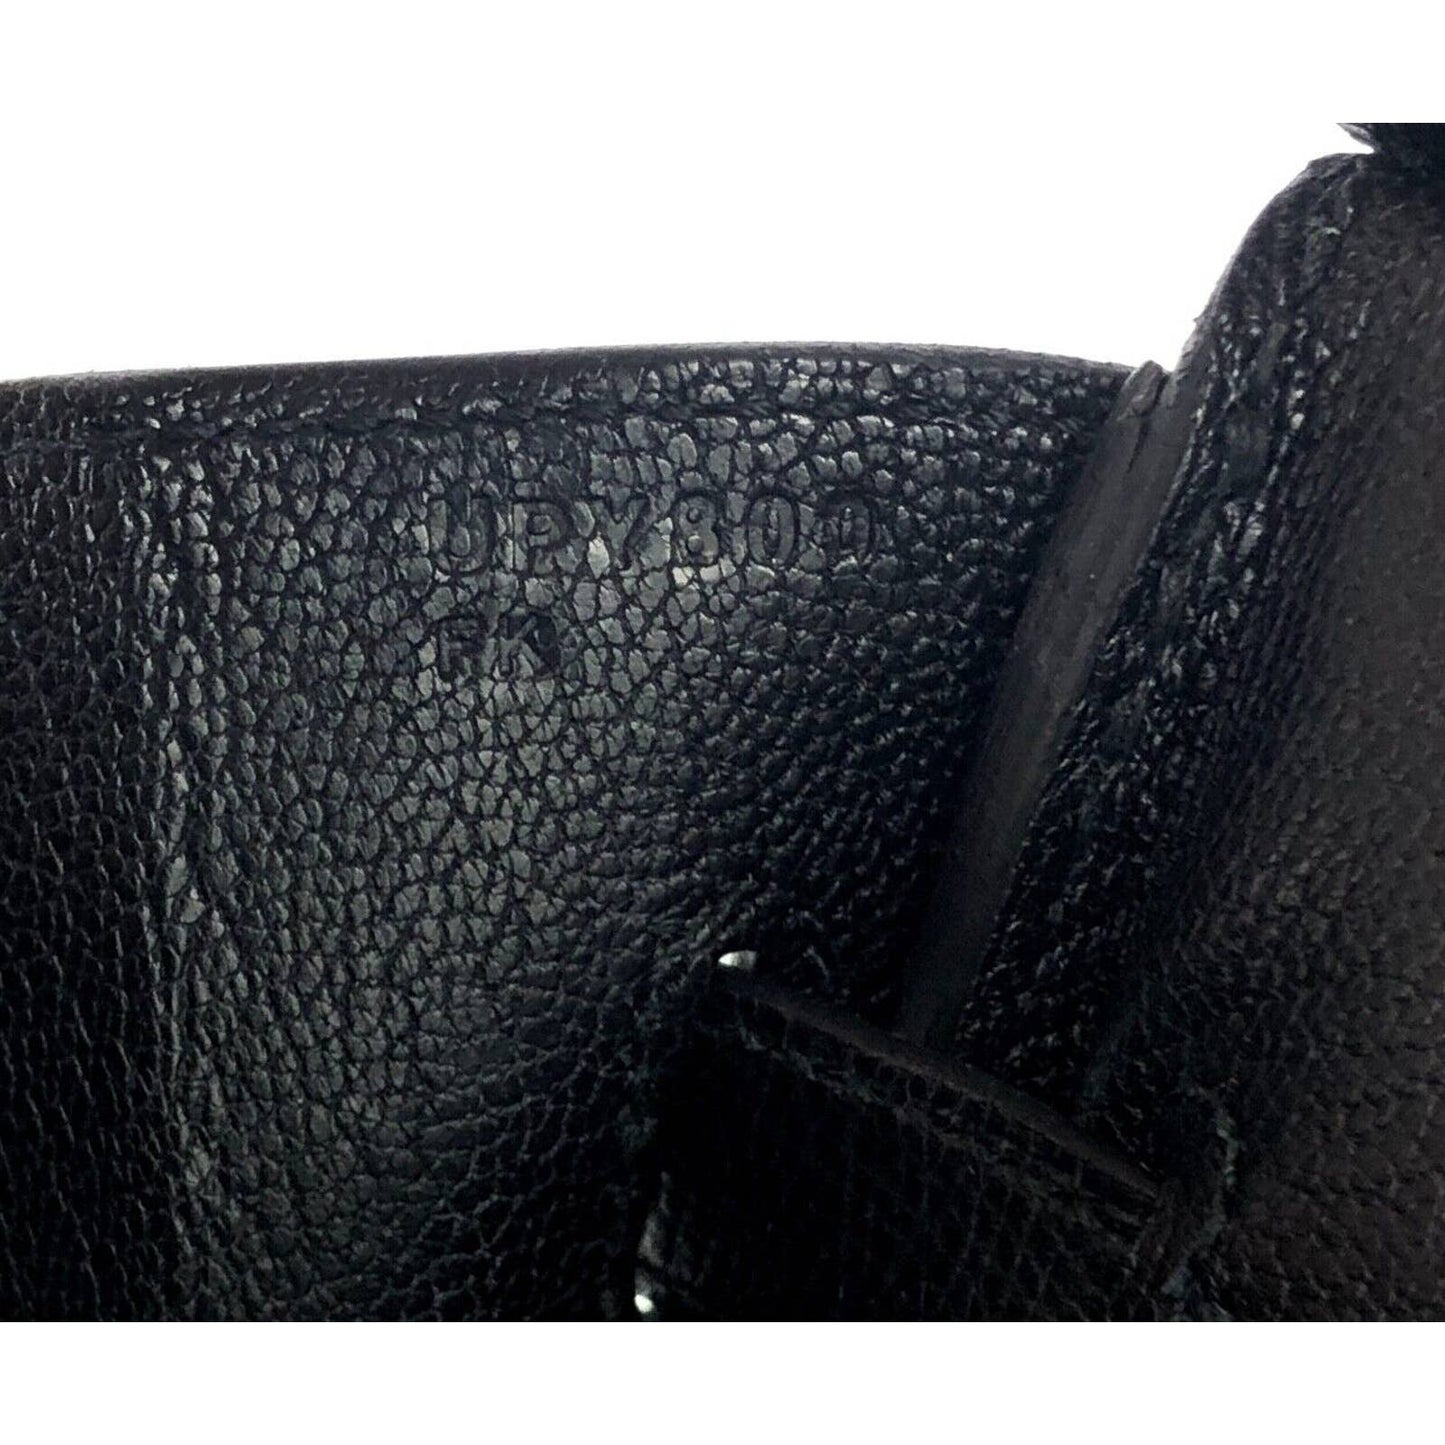 Hermes Birkin 30 Black Epsom Leather Gold Hardware Bag Handbag 2022